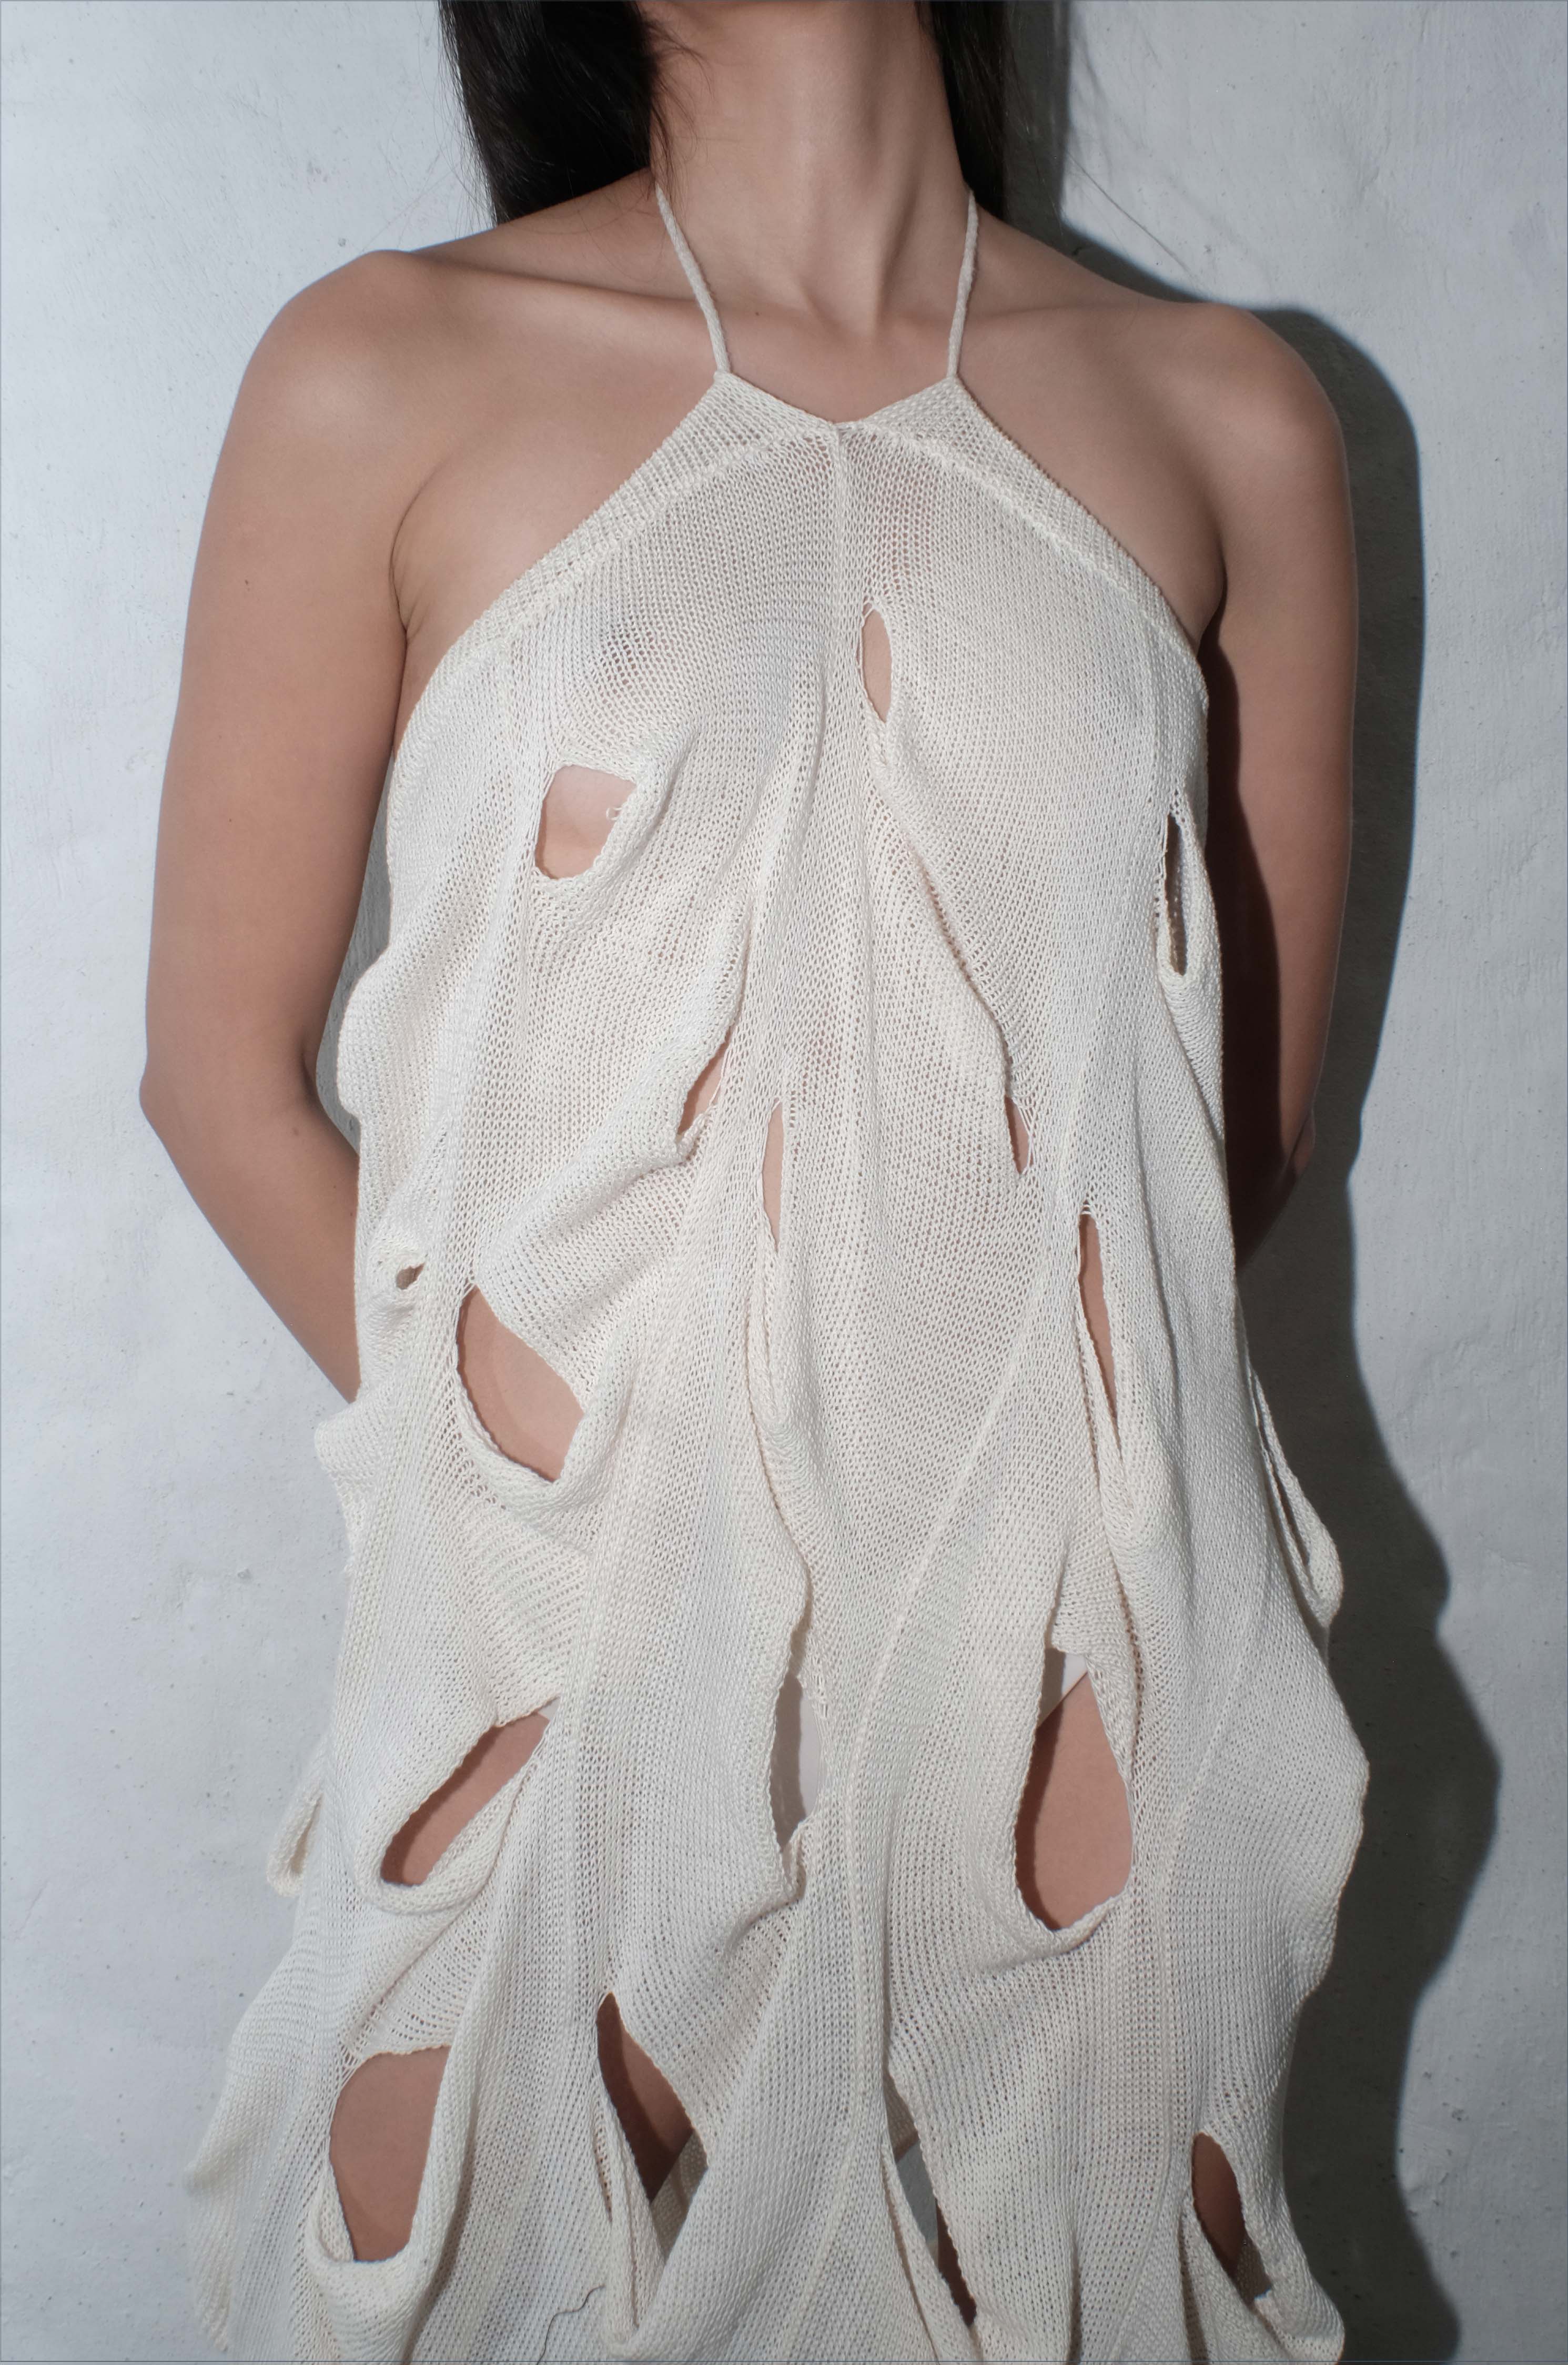 krystal paniagua cascade skirt white knitwear